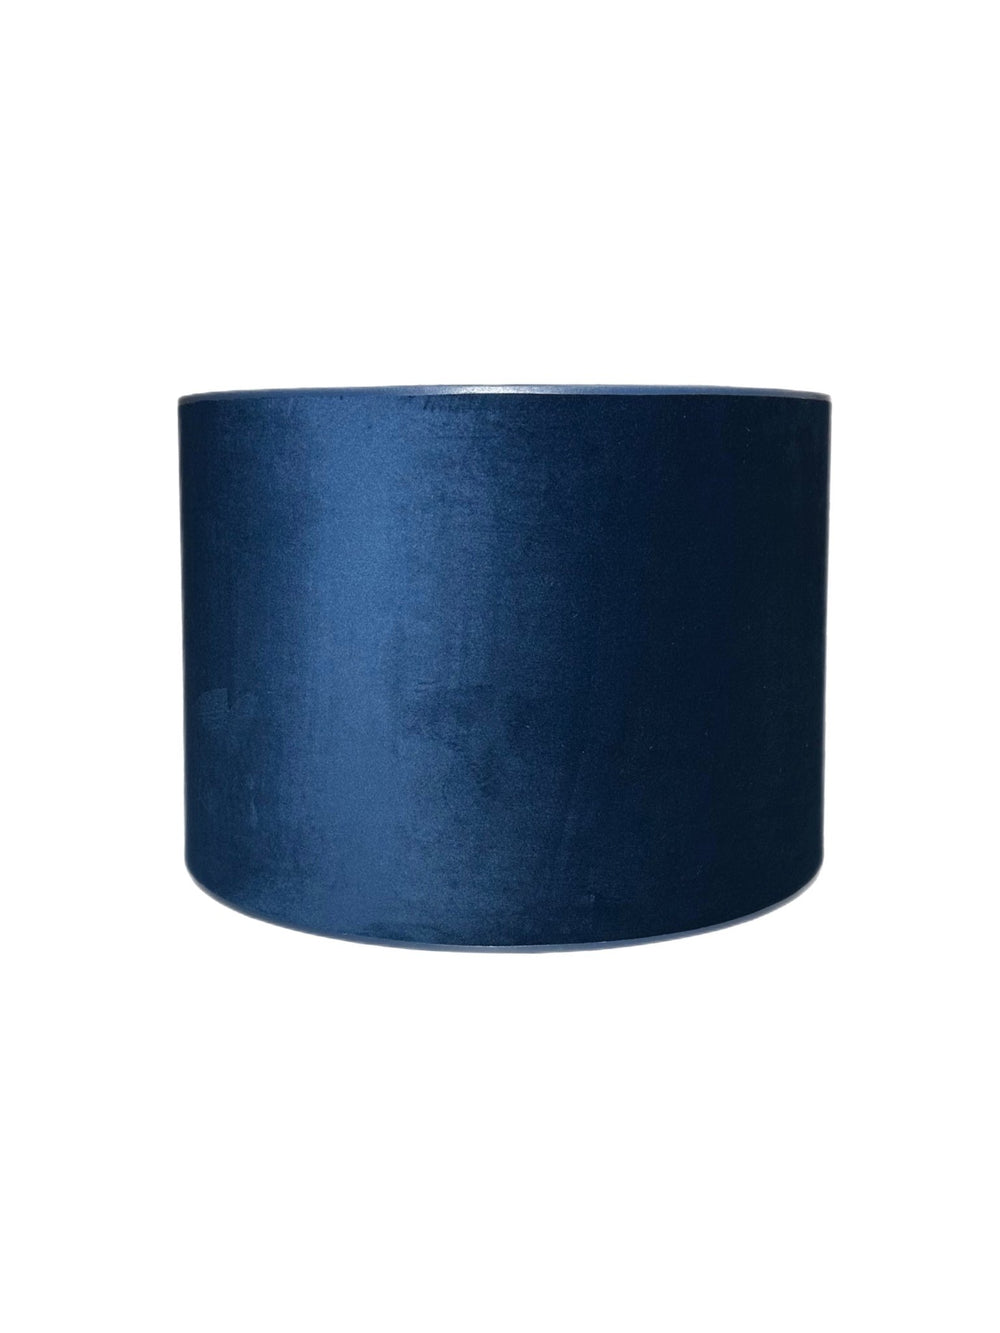 Navy Velvet Drum - multiple sizes - Lux Lamp Shades